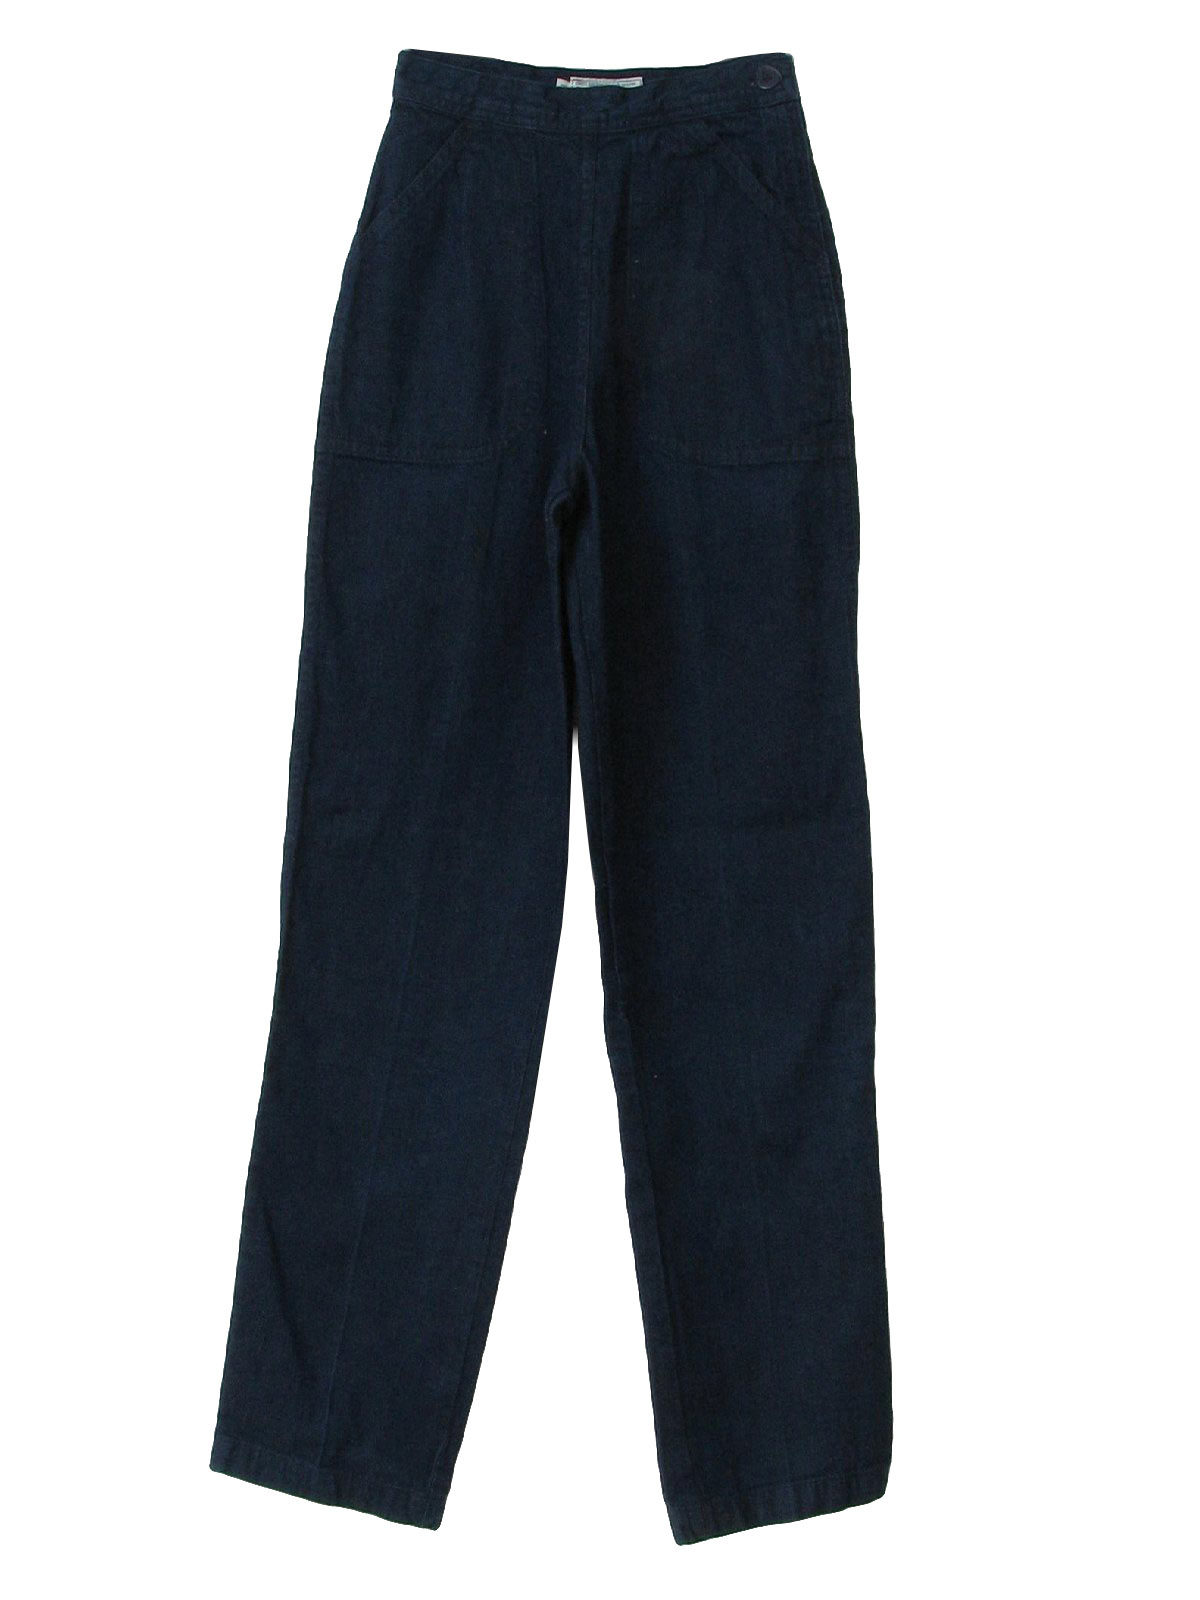 Vintage 1980's Pants: 80s -Chico Pants- Womens dark blue cotton denim ...